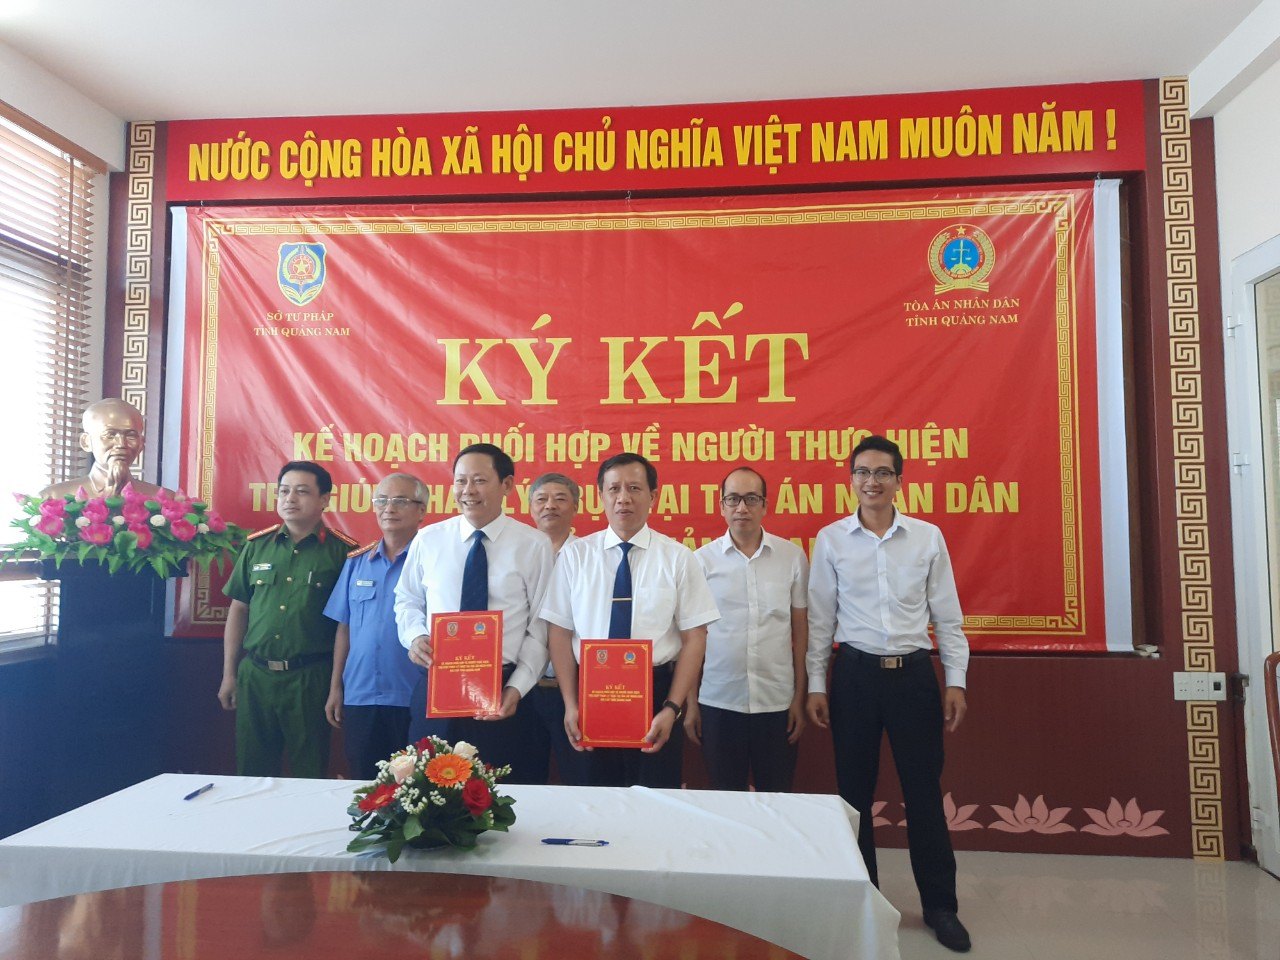 Ký kết Kế hoạch phối hợp về người thực hiện trợ giúp pháp lý trực tại Tòa án nhân dân hai cấp tỉnh Quarng Nam